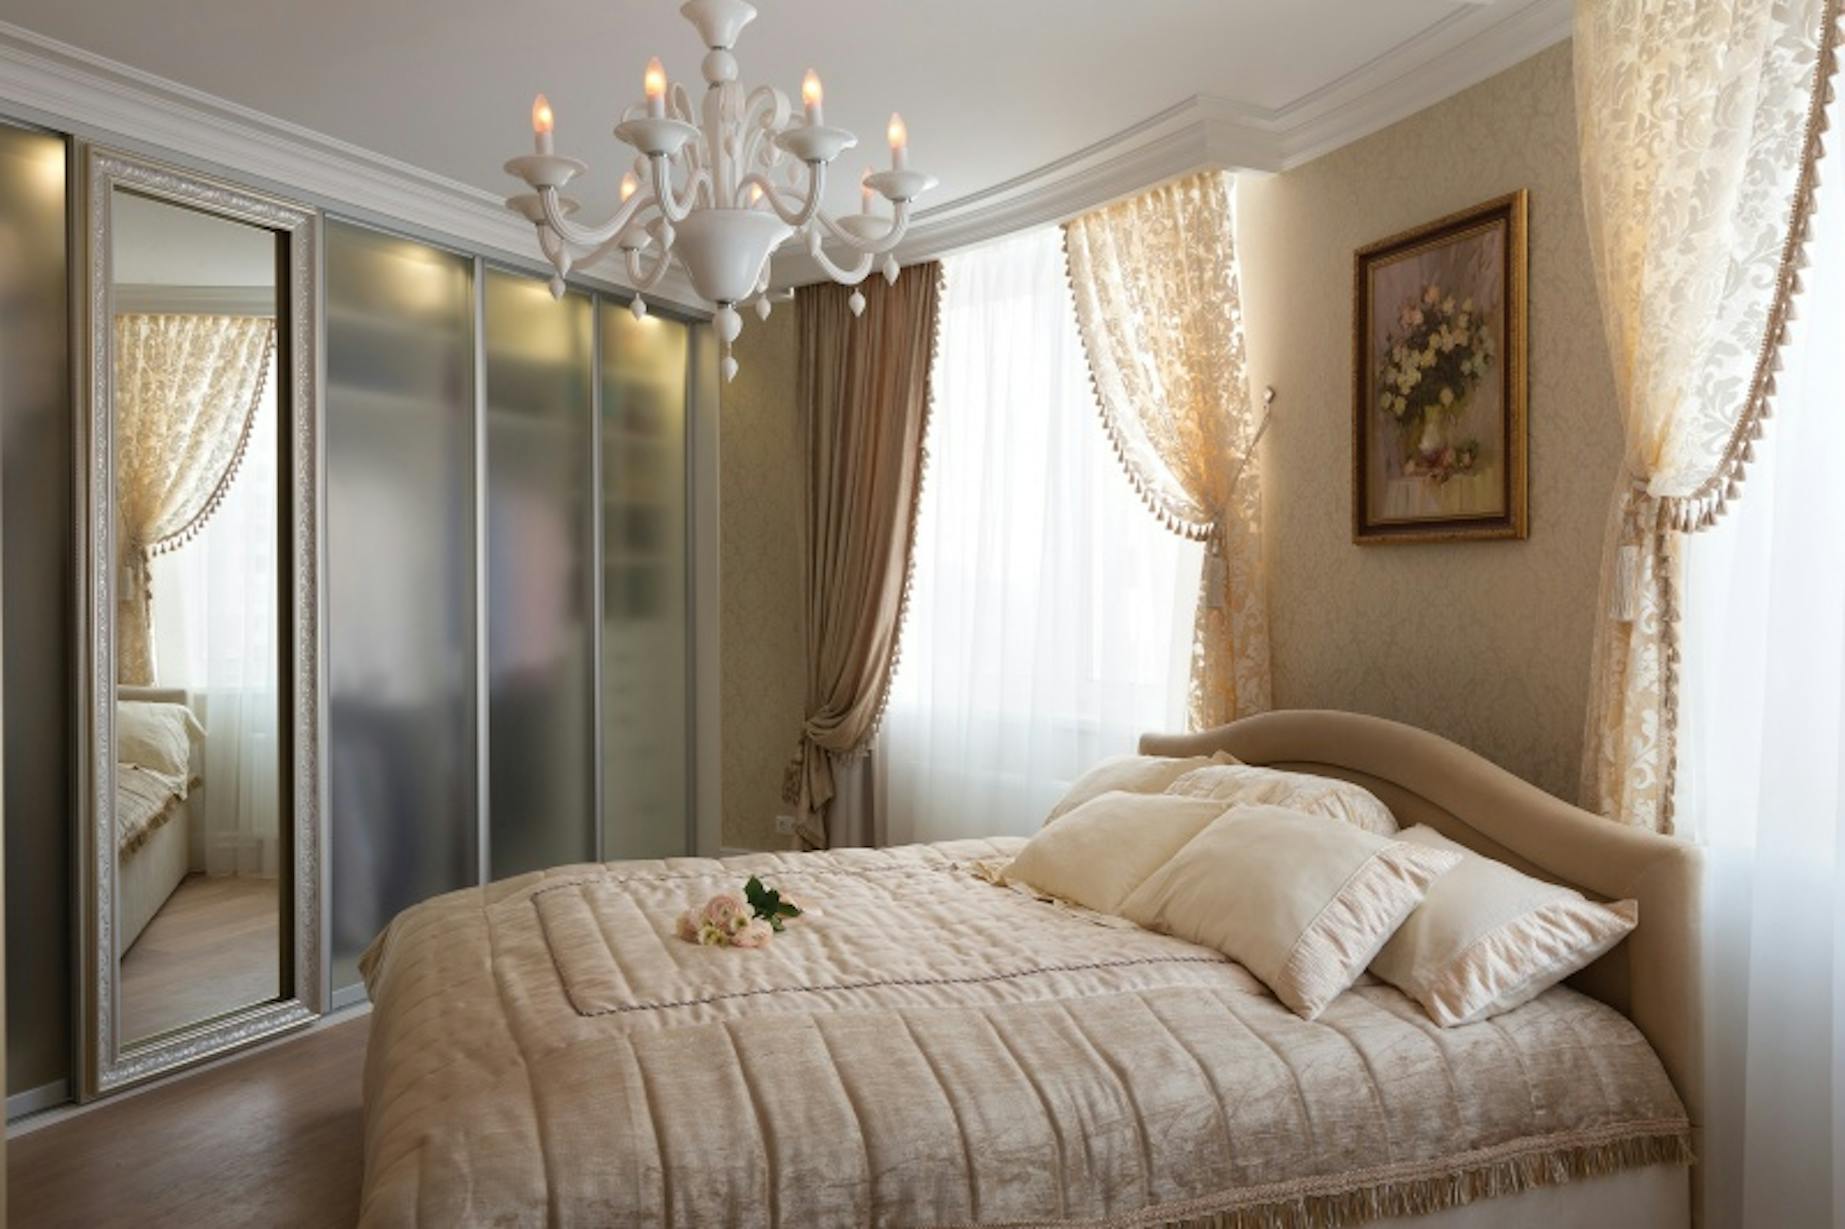 Можно ставить зеркала в спальне. Спальня французский стиль Люкс Ритц. Дизайн спальни в светлых тонах классический стиль. Зеркало напротив кровати в спальне. Бежевые классические шторы в спальню.